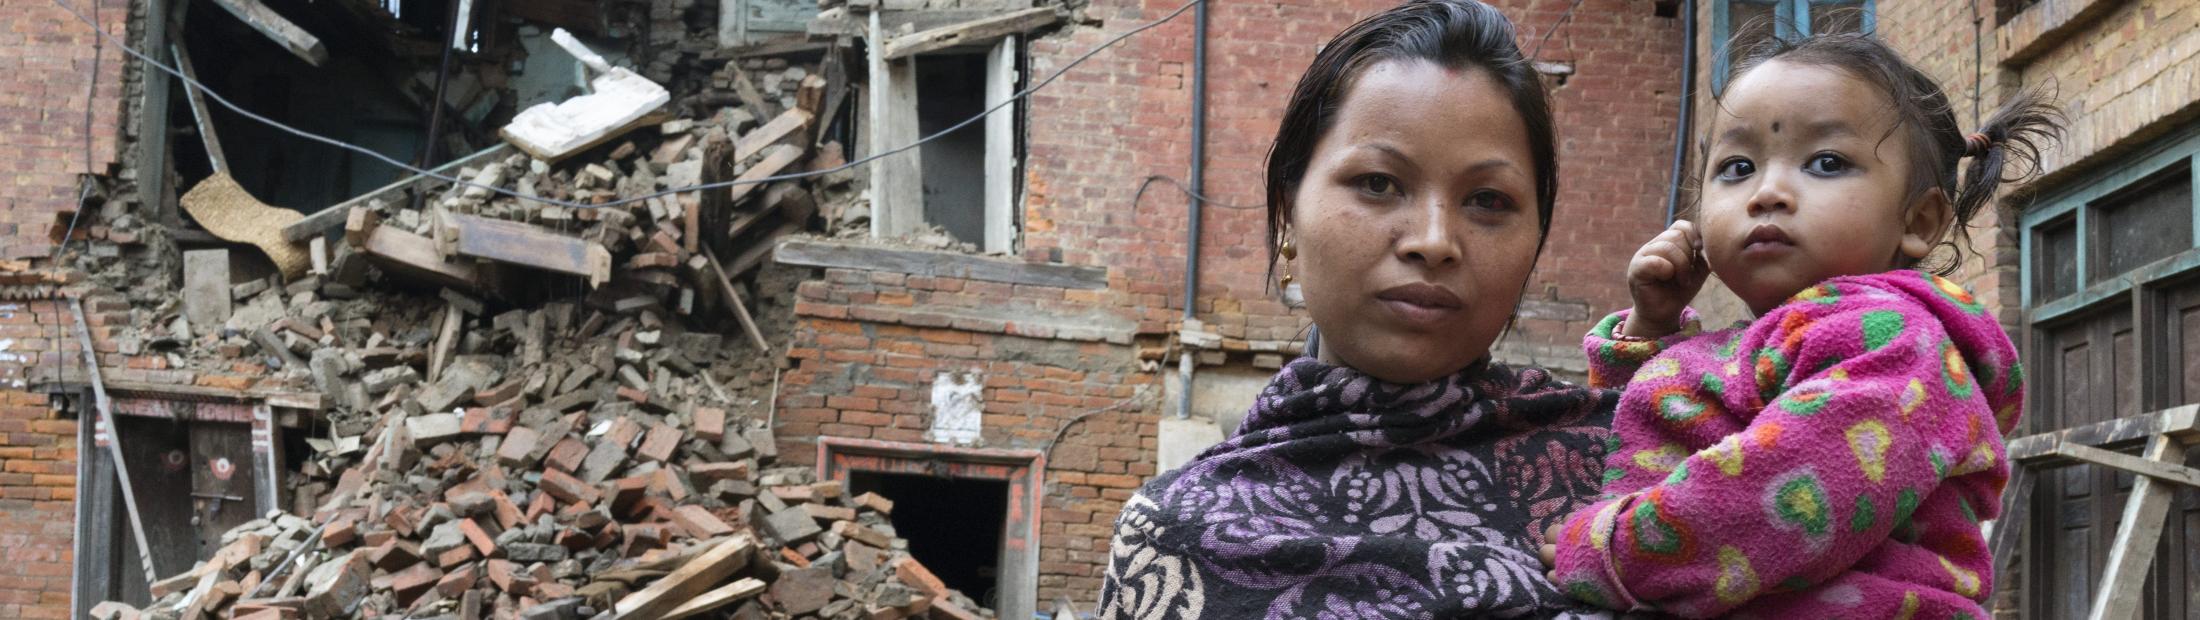 ACNUR envía más ayuda a las víctimas del terremoto en Nepal